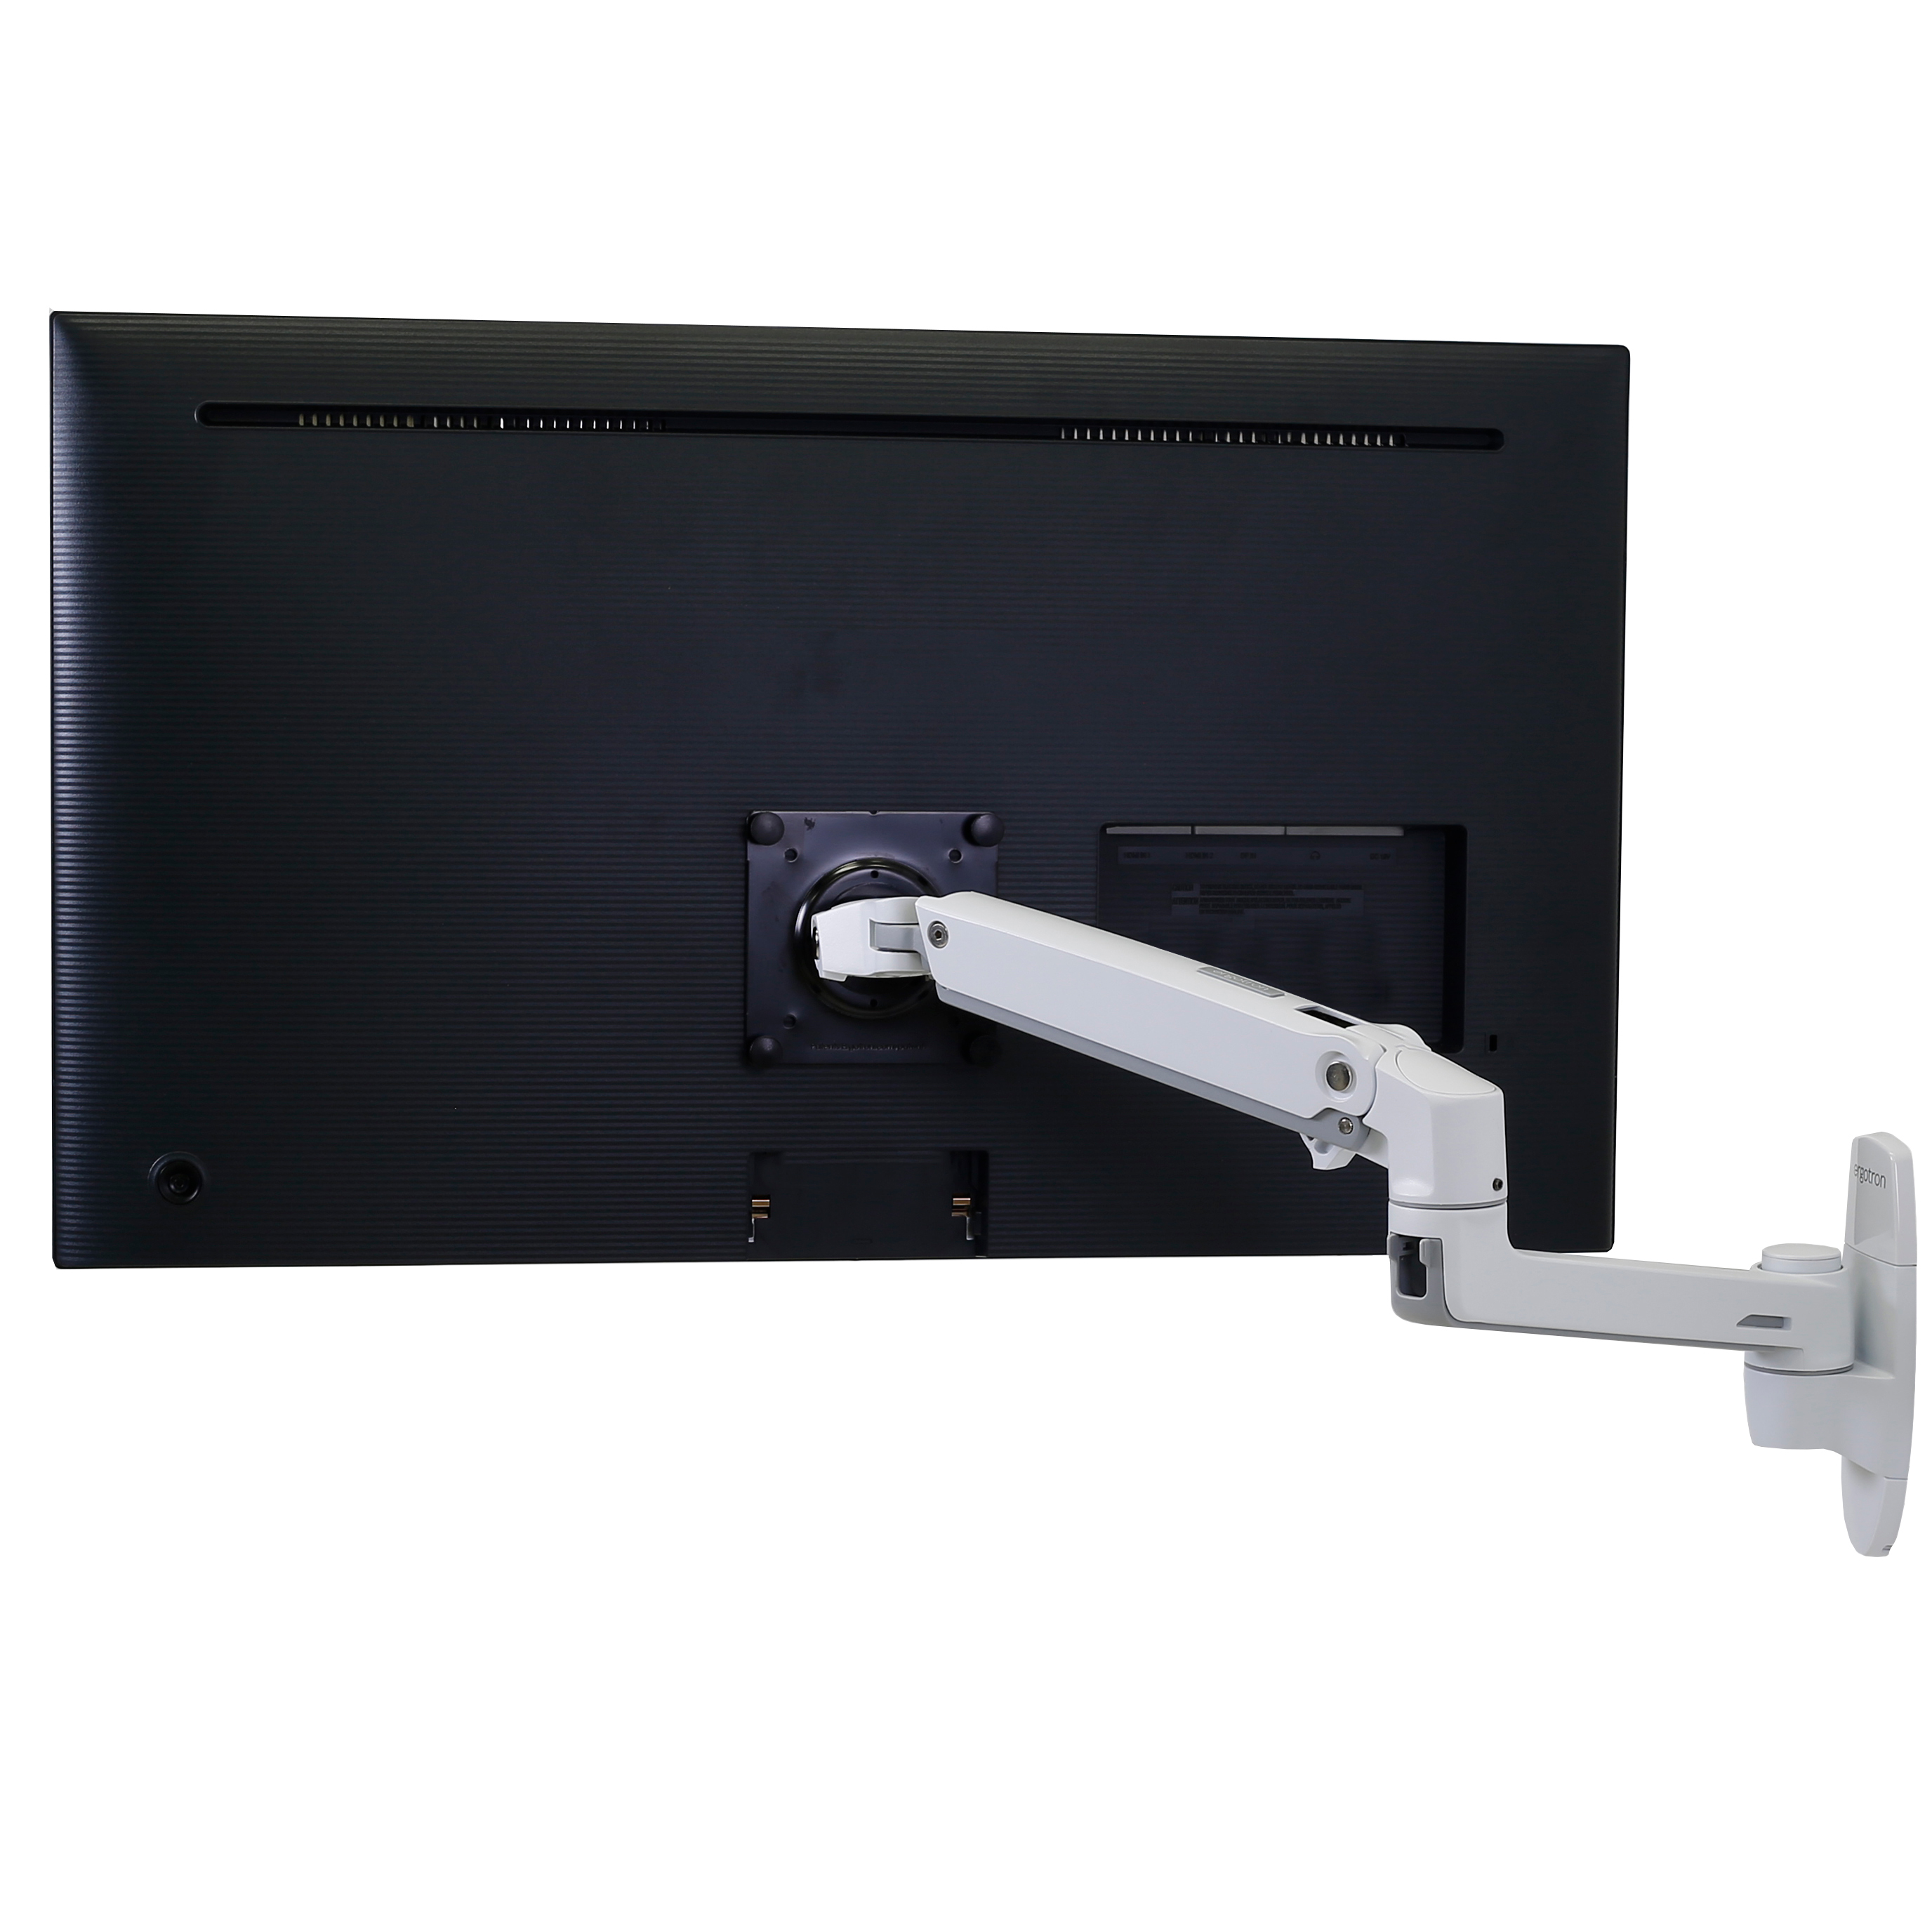 Ergotron Brazo de monitor único LX de pie para sentarse, montaje en pared  VESA - para monitores de hasta 42 pulgadas, 7 a 25 libras - Aluminio pulido